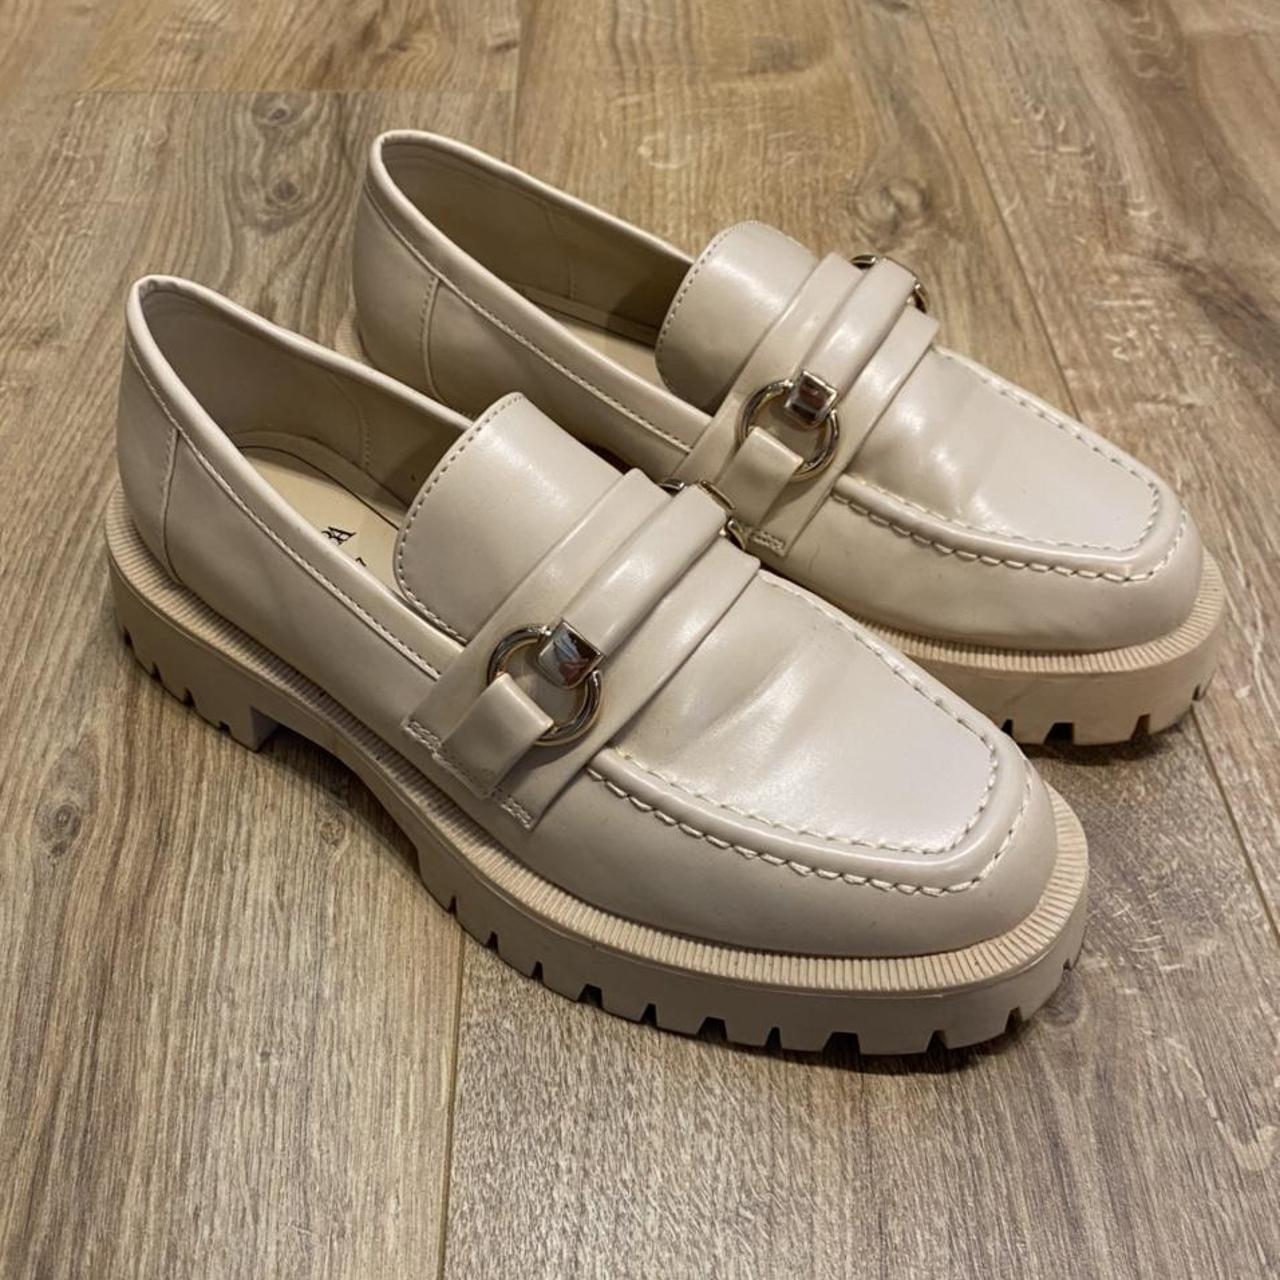 Zara track sole loafers in beige, size 4 size 37.... - Depop